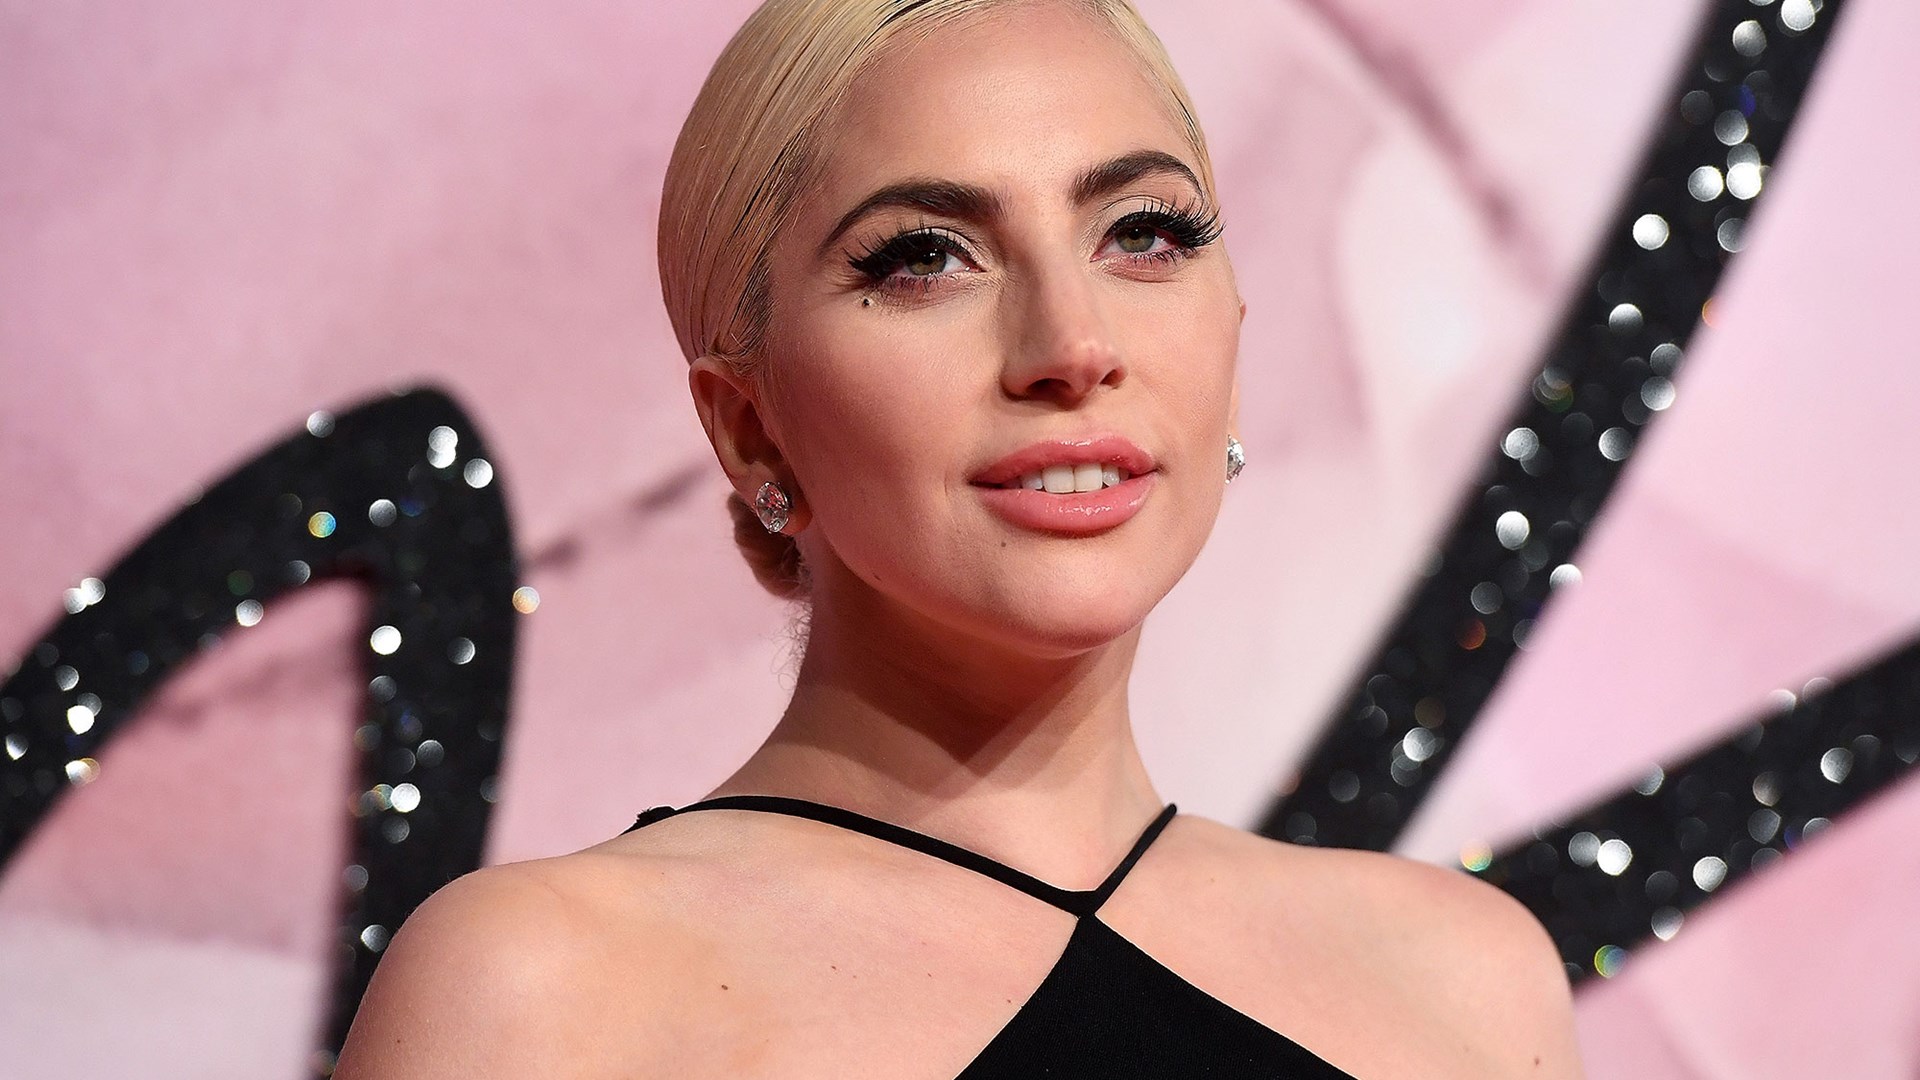 Ισχυροί πόνοι ανάγκασαν τη Lady Gaga να ακυρώσει 10 συναυλίες